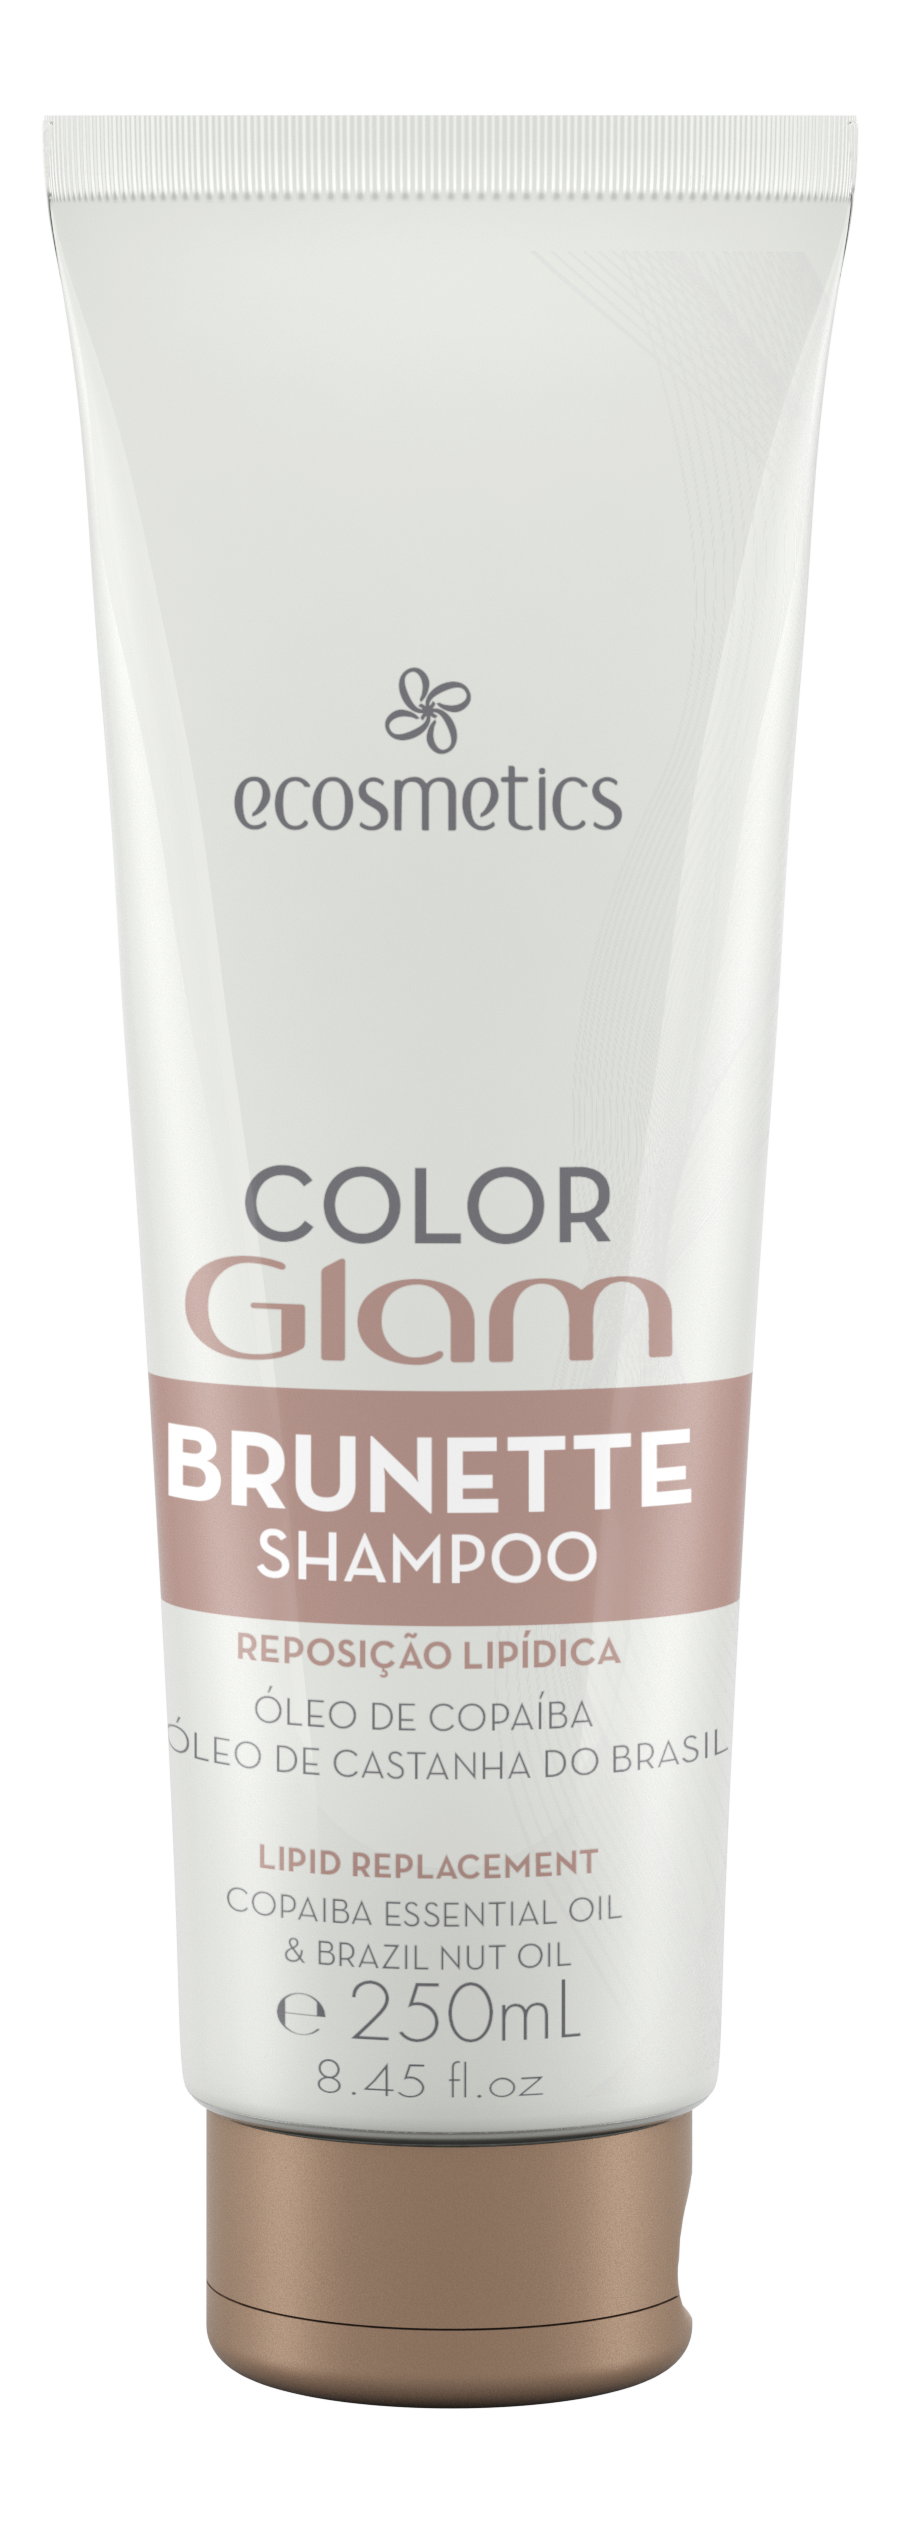 Brunette Shampoo